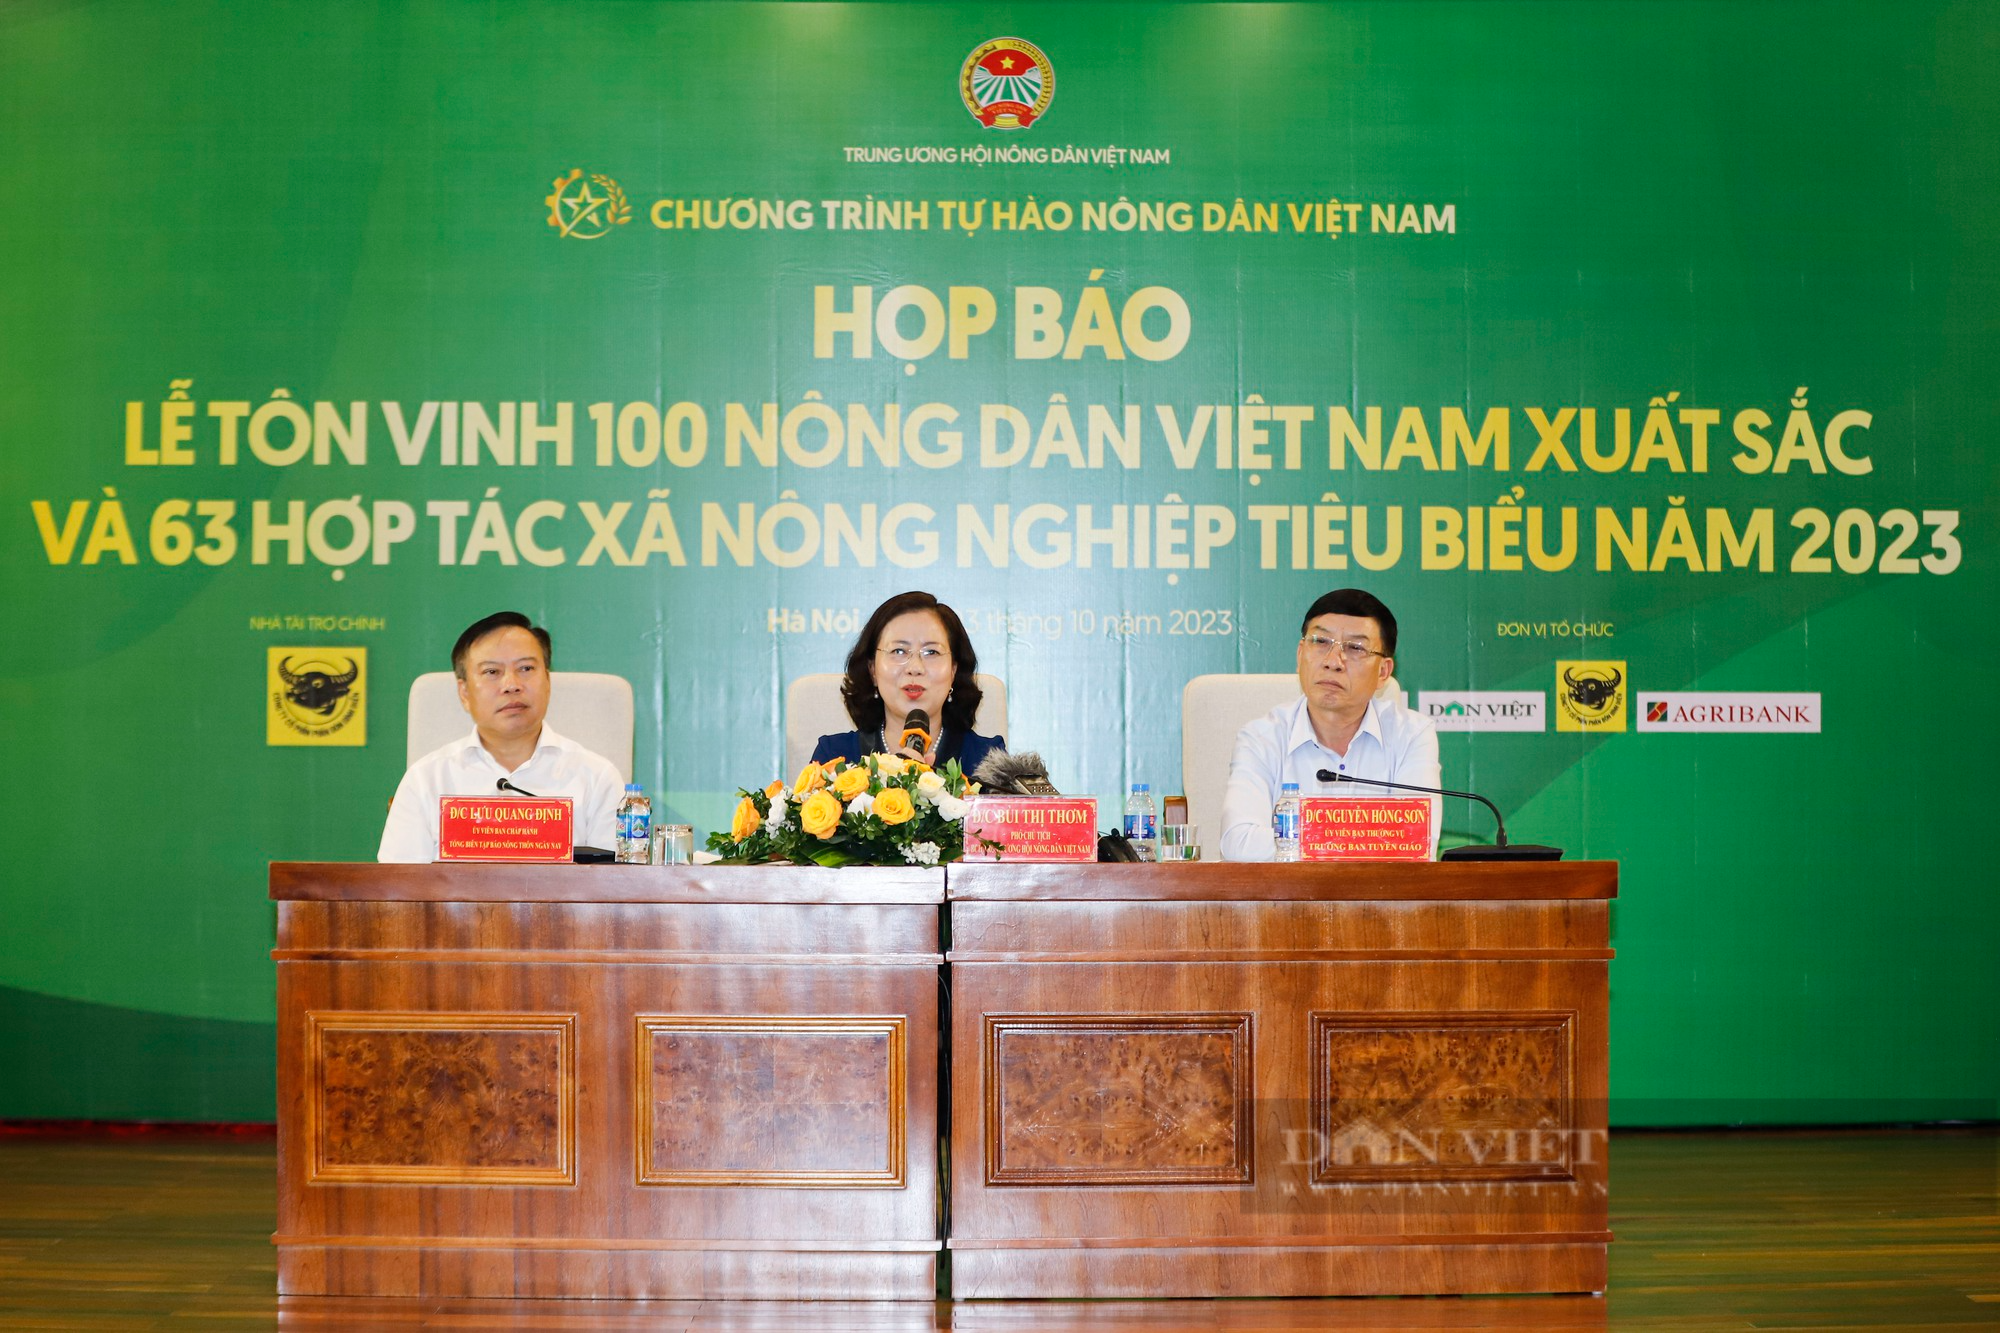 Hình ảnh Họp báo Chương trình Tự hào nông dân Việt Nam 2023 - Ảnh 2.